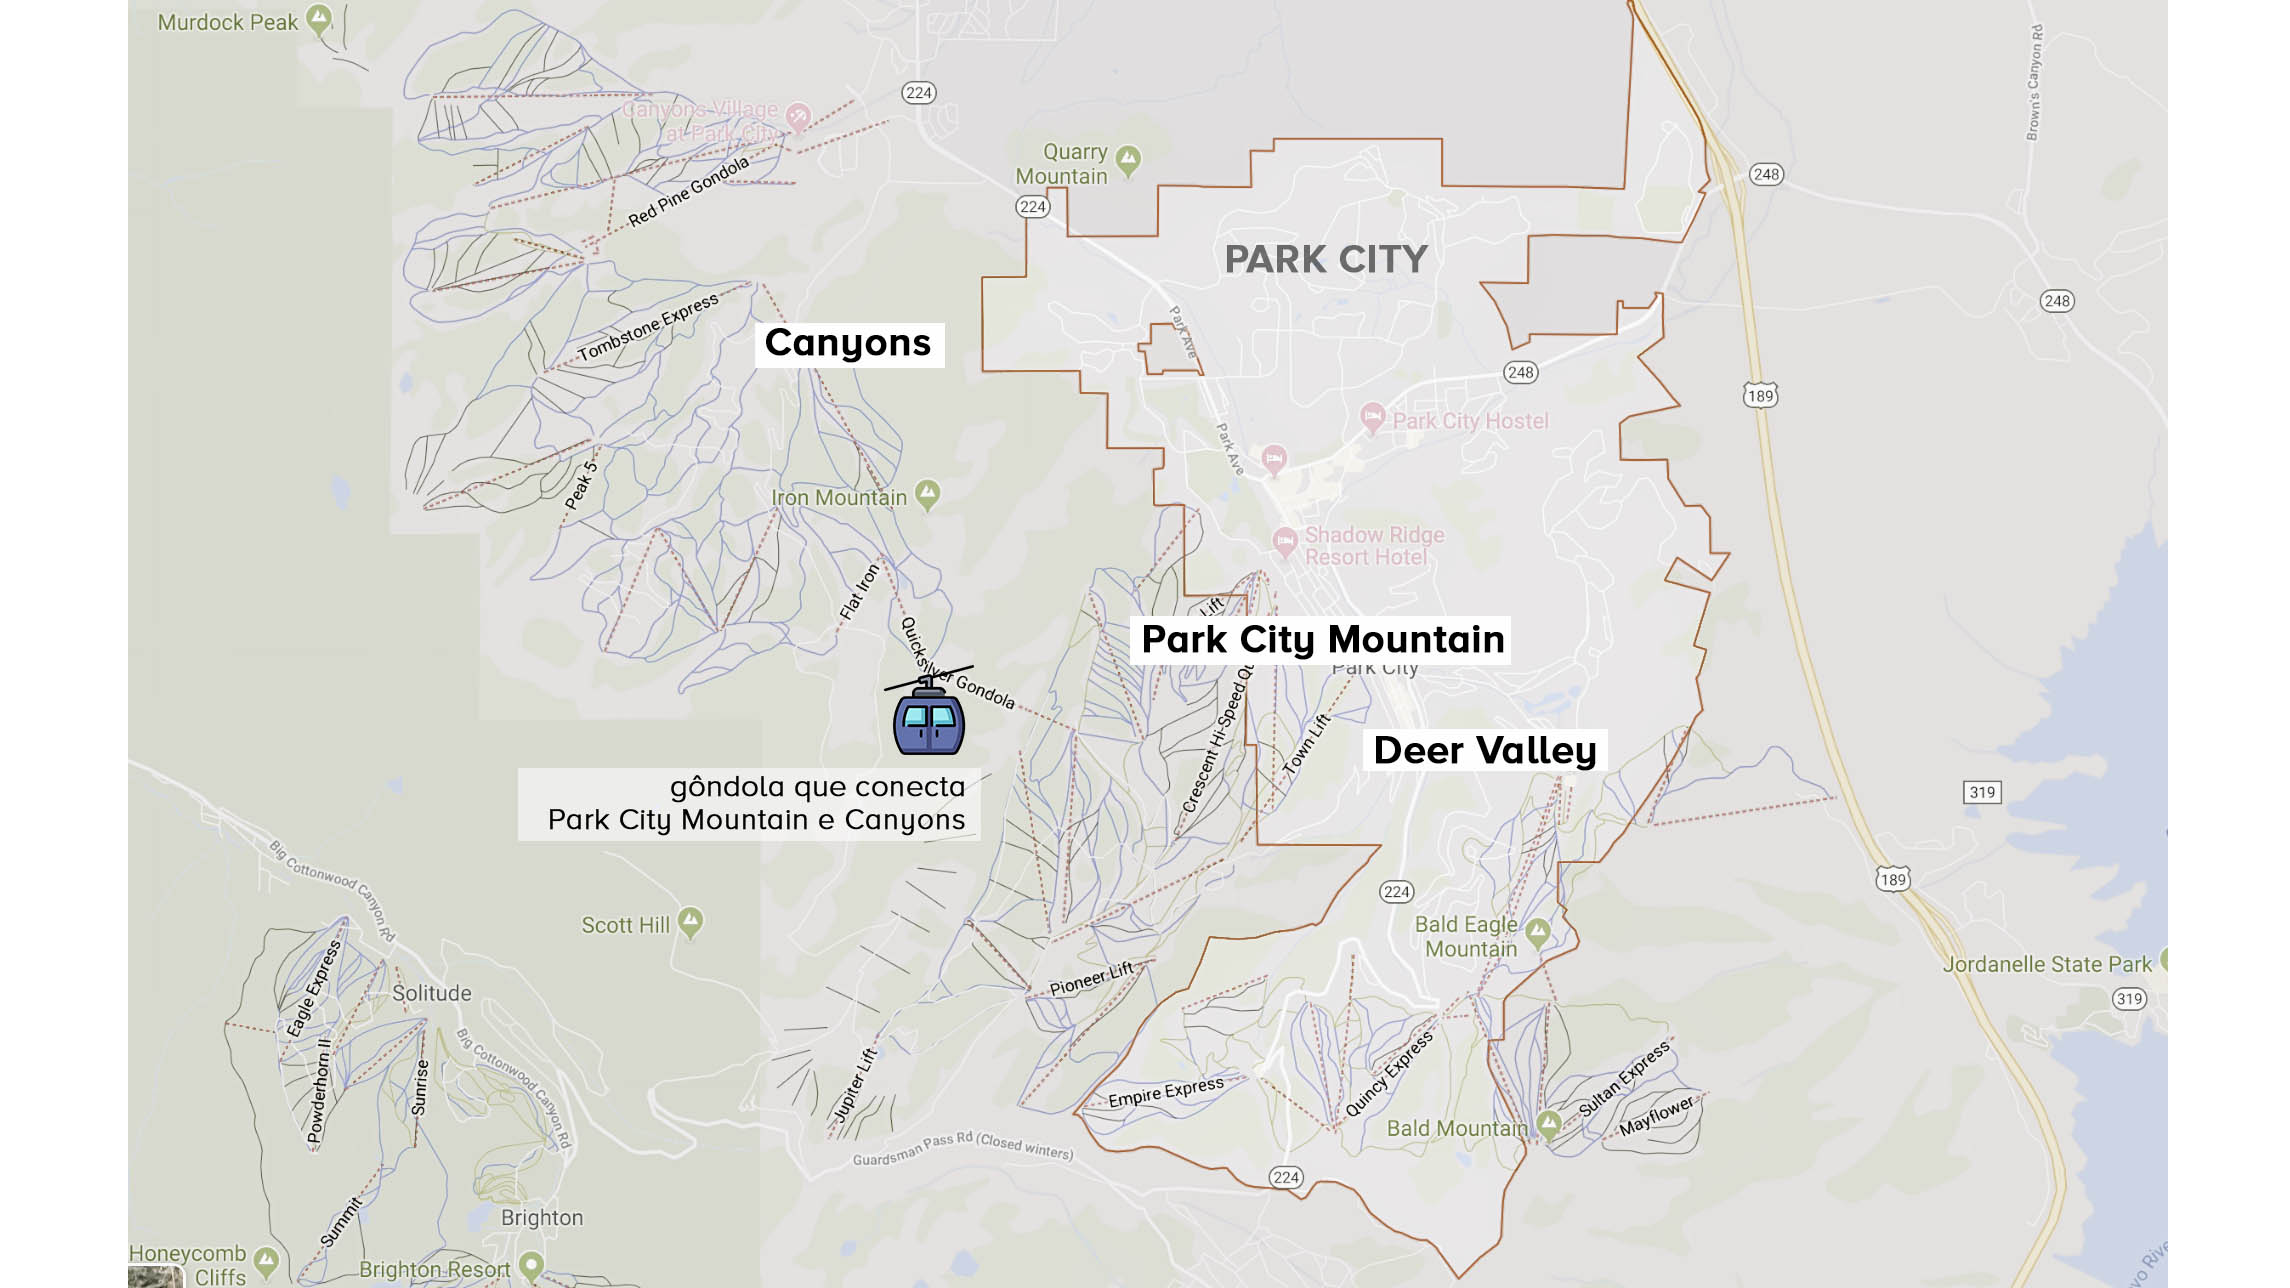 estações de ski de Park City indicadas no mapa